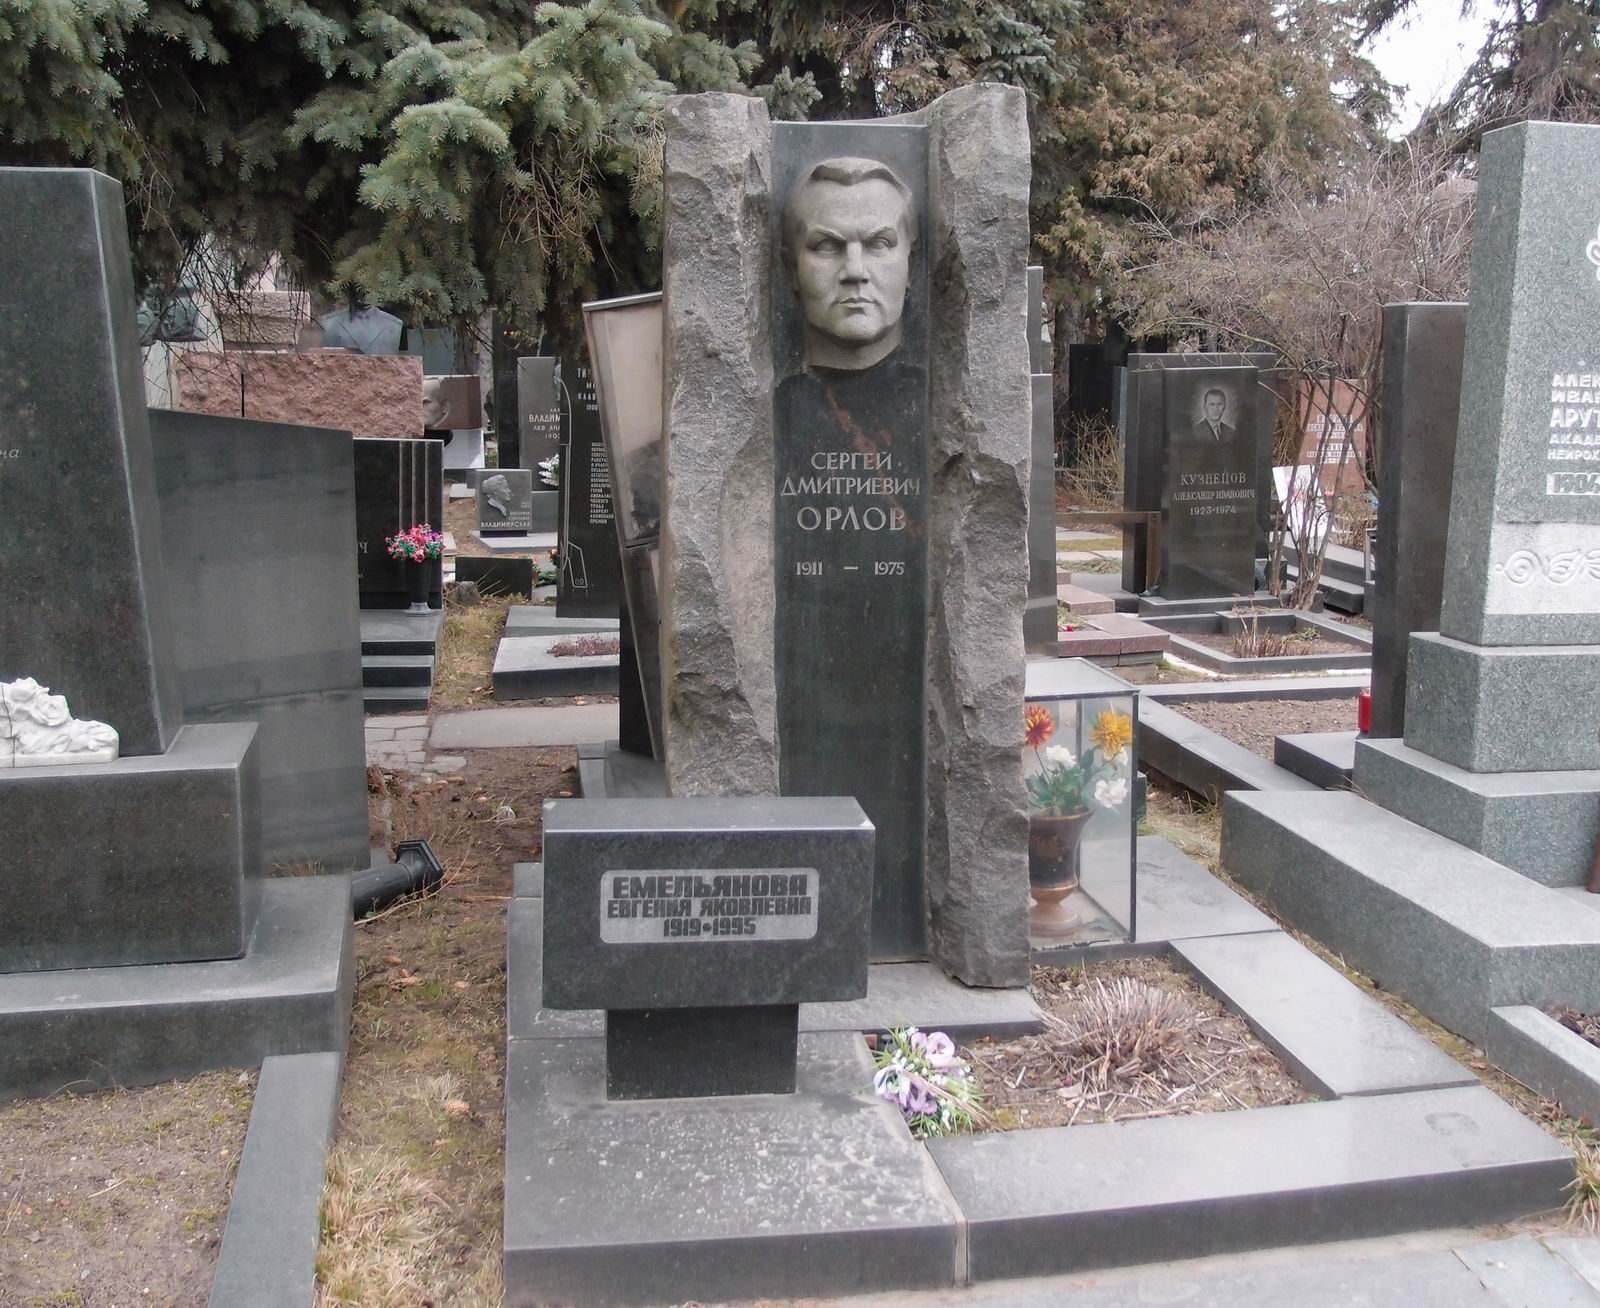 Памятник на могиле Орлова С.Д. (1911-1975), ск. Ю.Чернов, арх. Ю.Гальперин, на Новодевичьем кладбище (7-10-16).